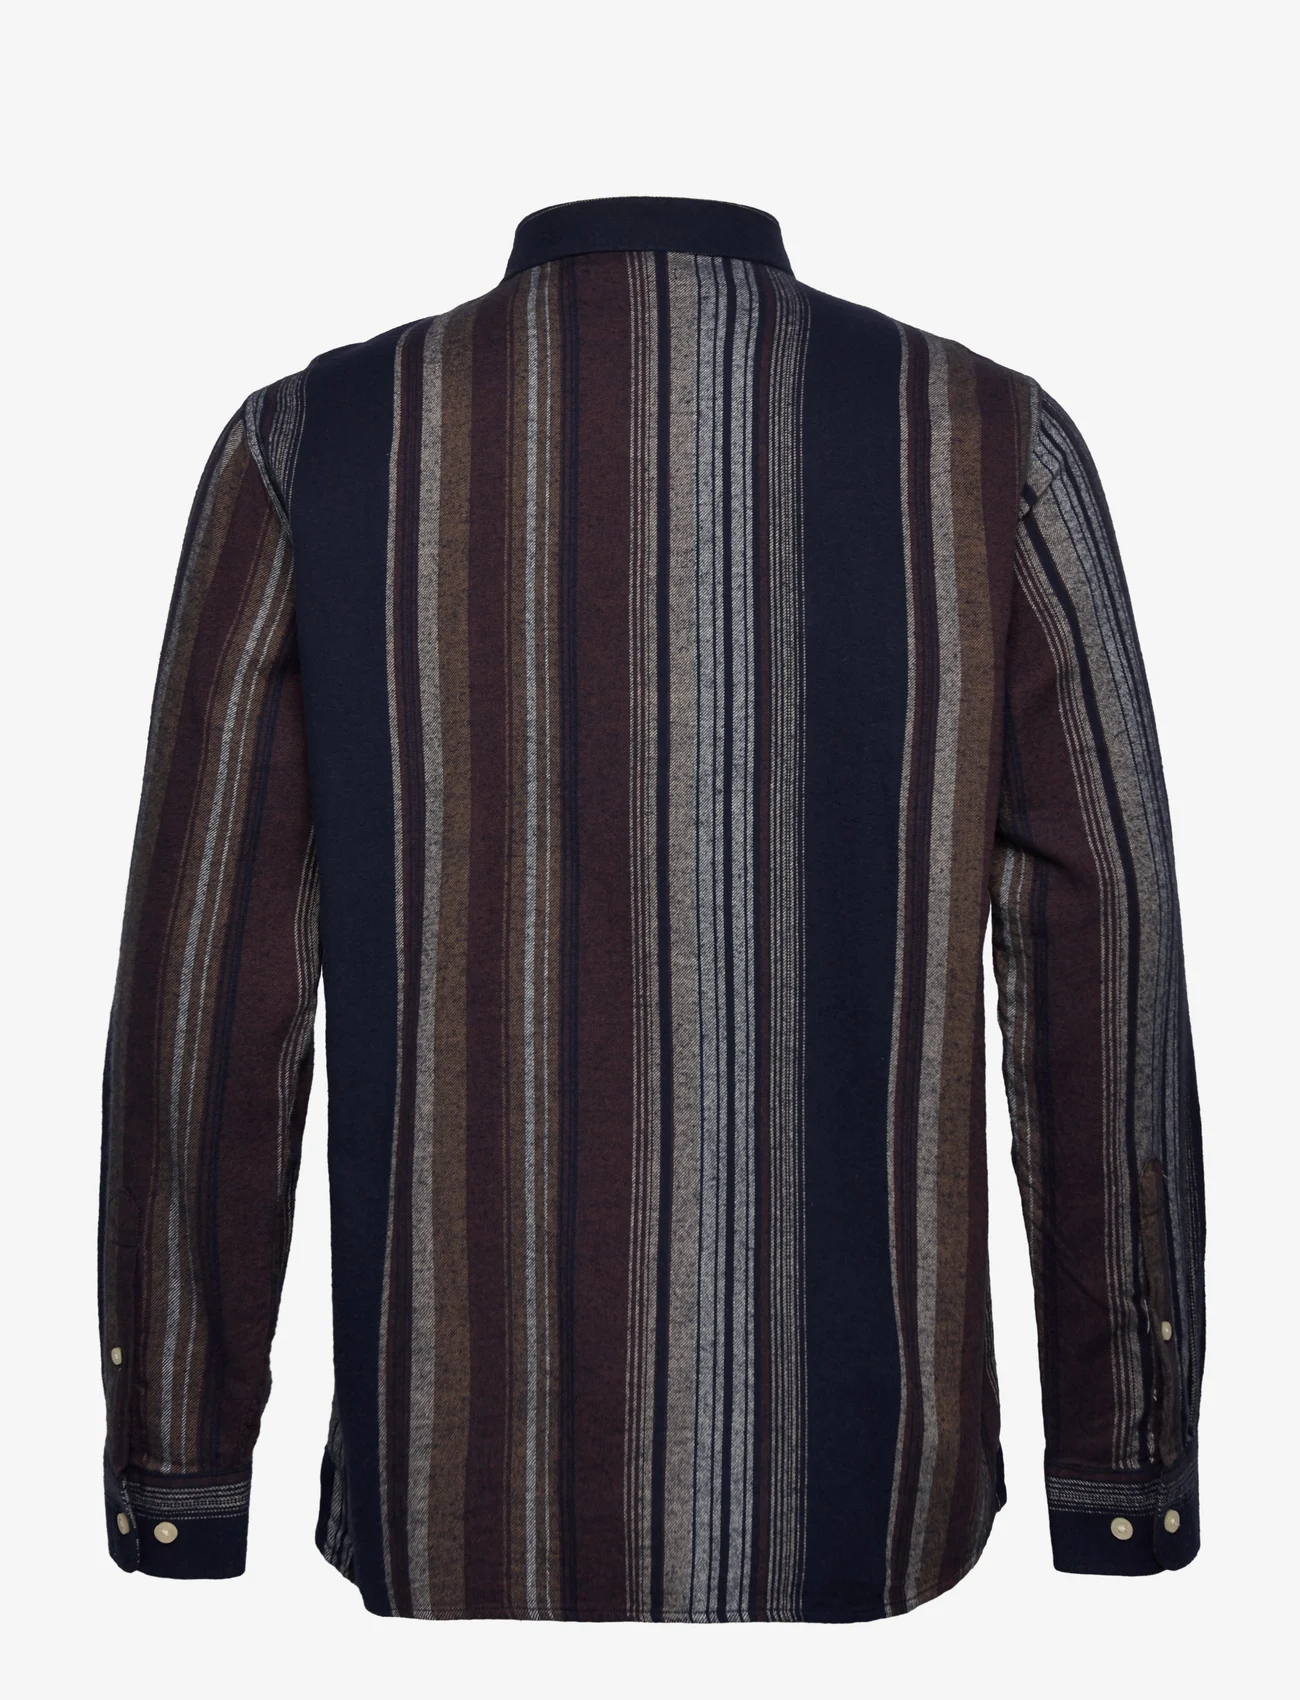 Knowledge Cotton Apparel - Loose fit double layer striped shir - kasdienio stiliaus marškiniai - multi color stripe - 1